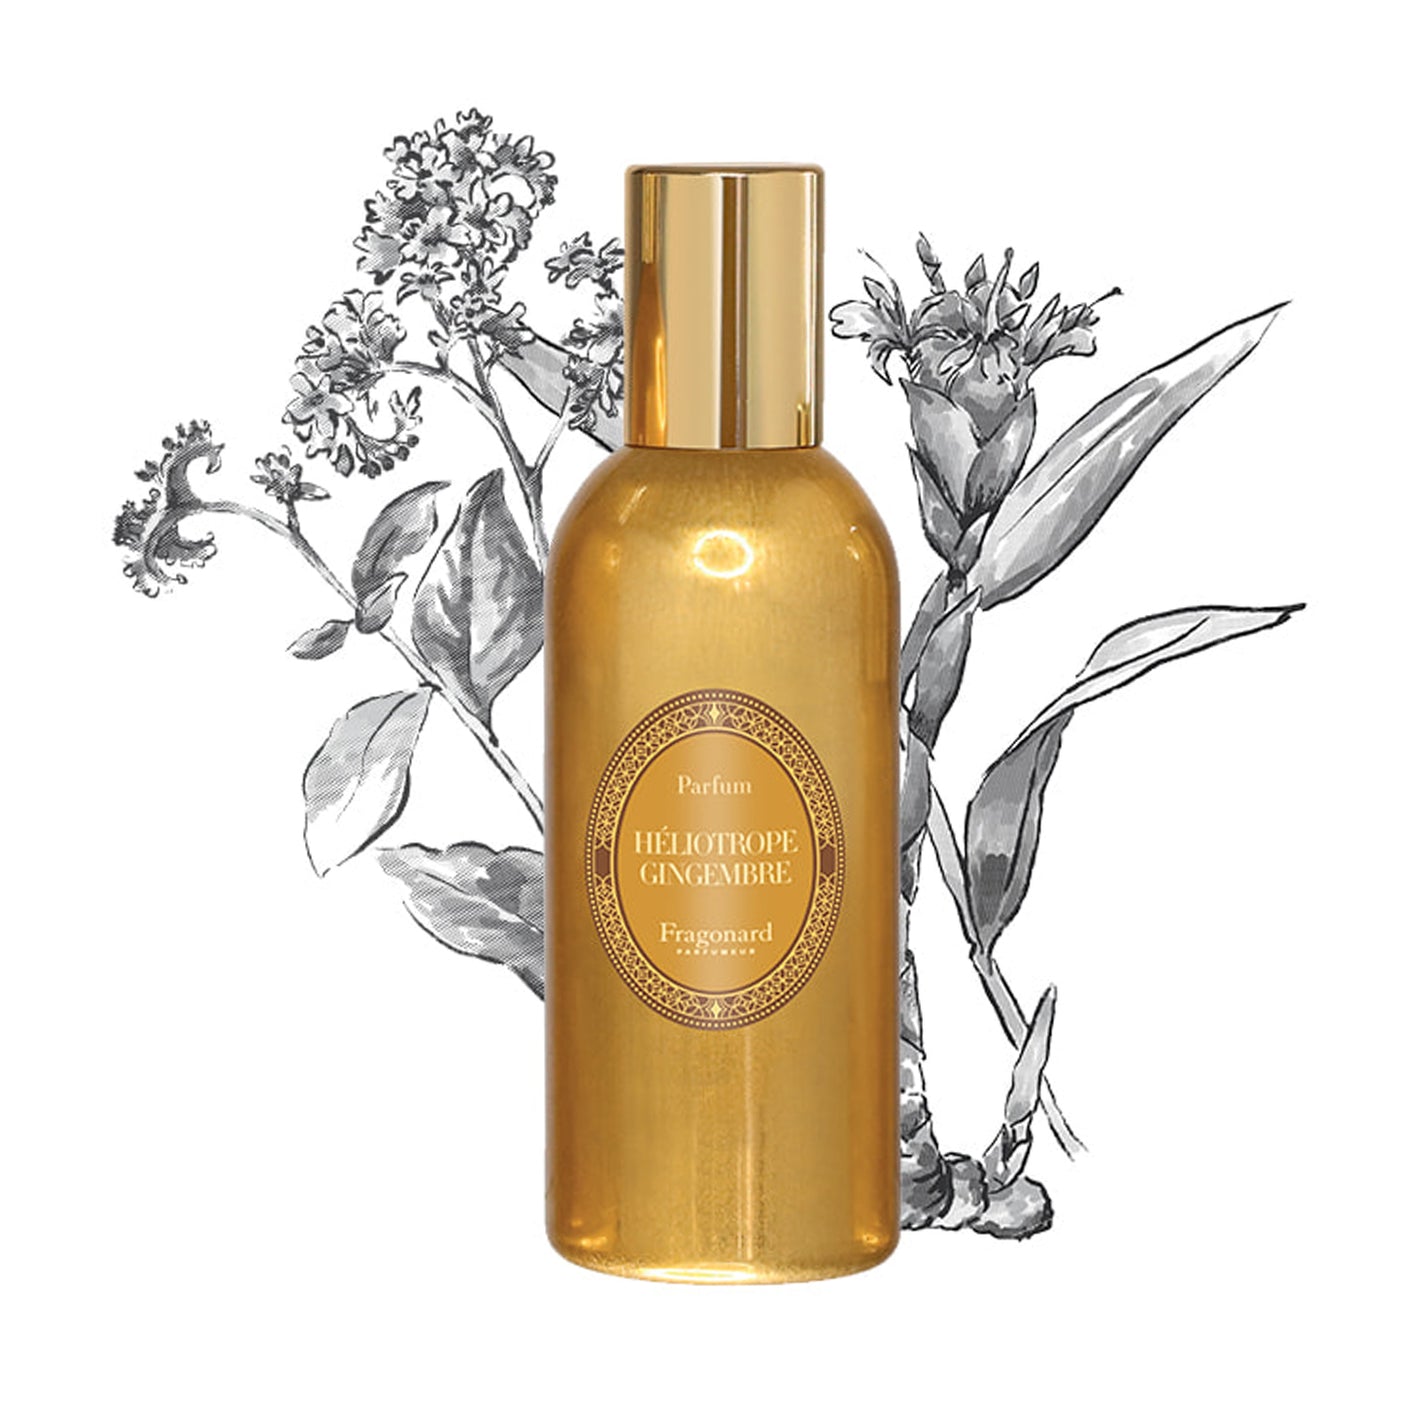 Fragonard Heliotrope Gingembre 'Estagon' Parfum - 60ml